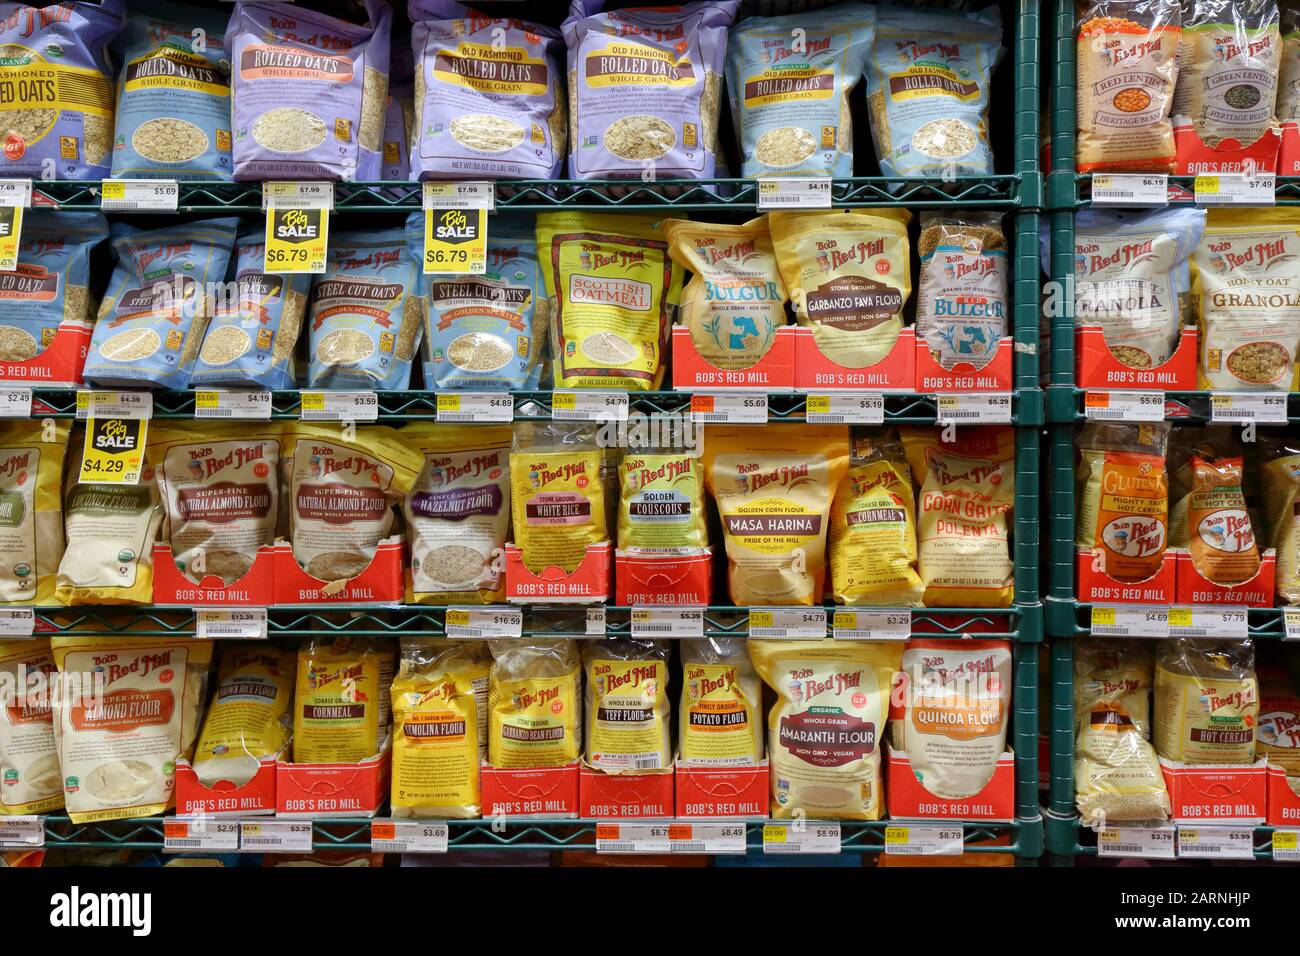 Productos de cereales y cereales de Bob's Red Mill en un estante de tienda de comestibles Foto de stock